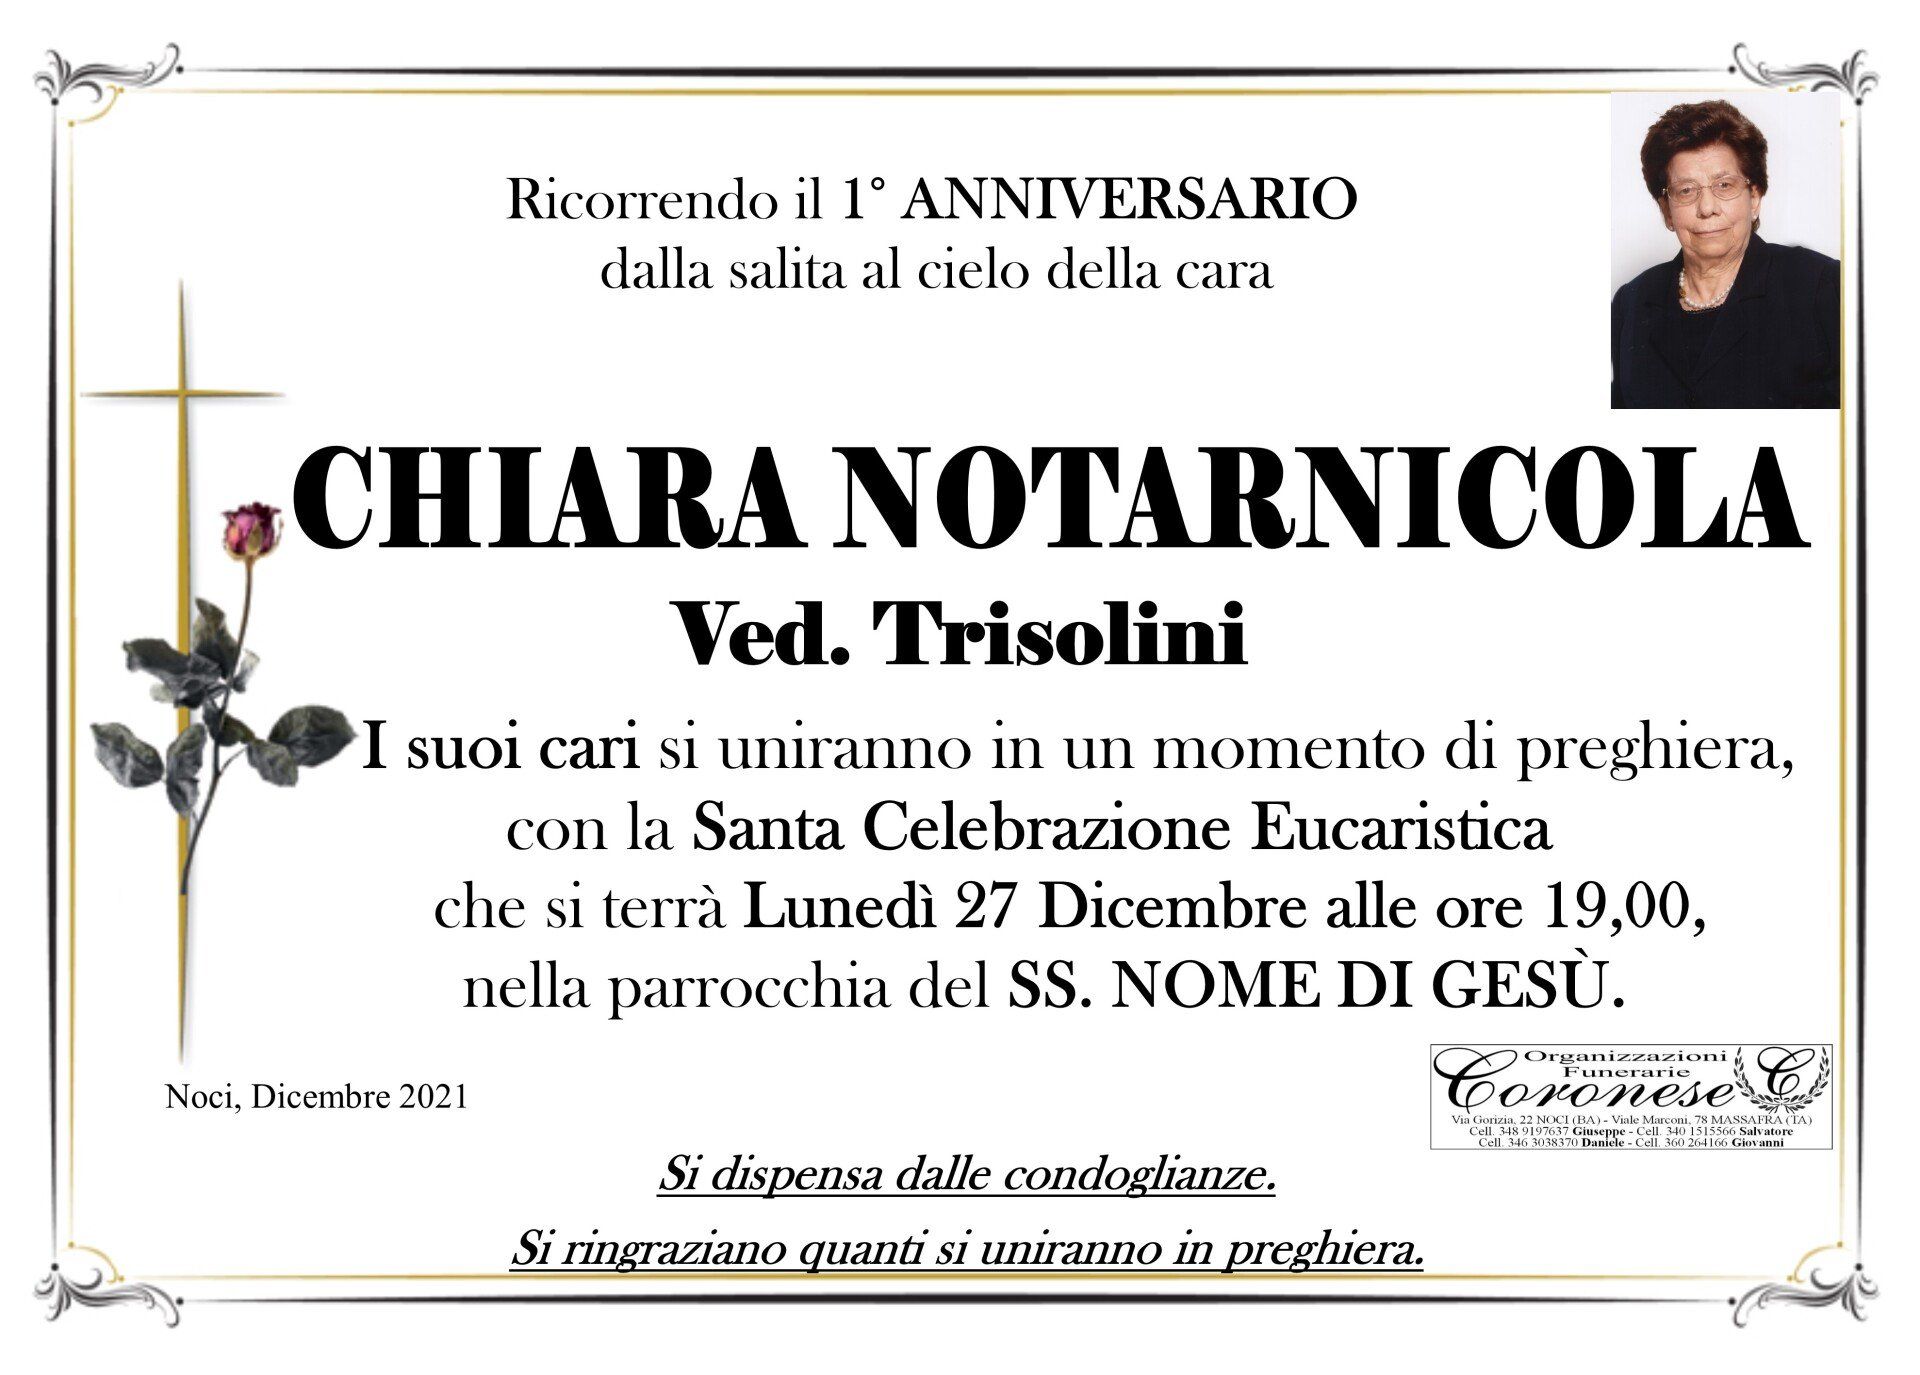 necrologio CHIARA NOTARNICOLA Ved. Trisolini